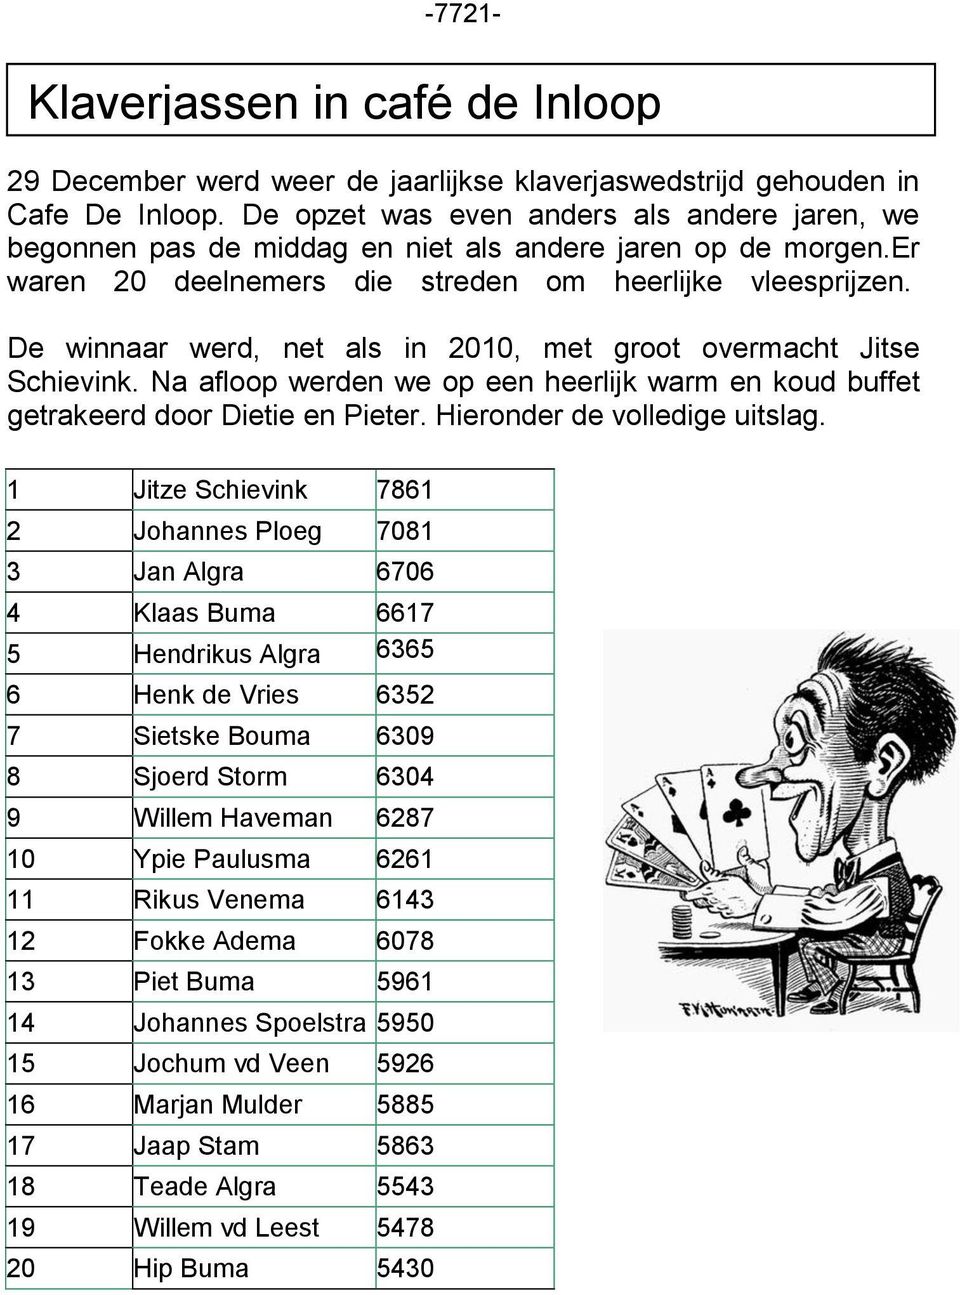 De winnaar werd, net als in 2010, met groot overmacht Jitse Schievink. Na afloop werden we op een heerlijk warm en koud buffet getrakeerd door Dietie en Pieter. Hieronder de volledige uitslag.